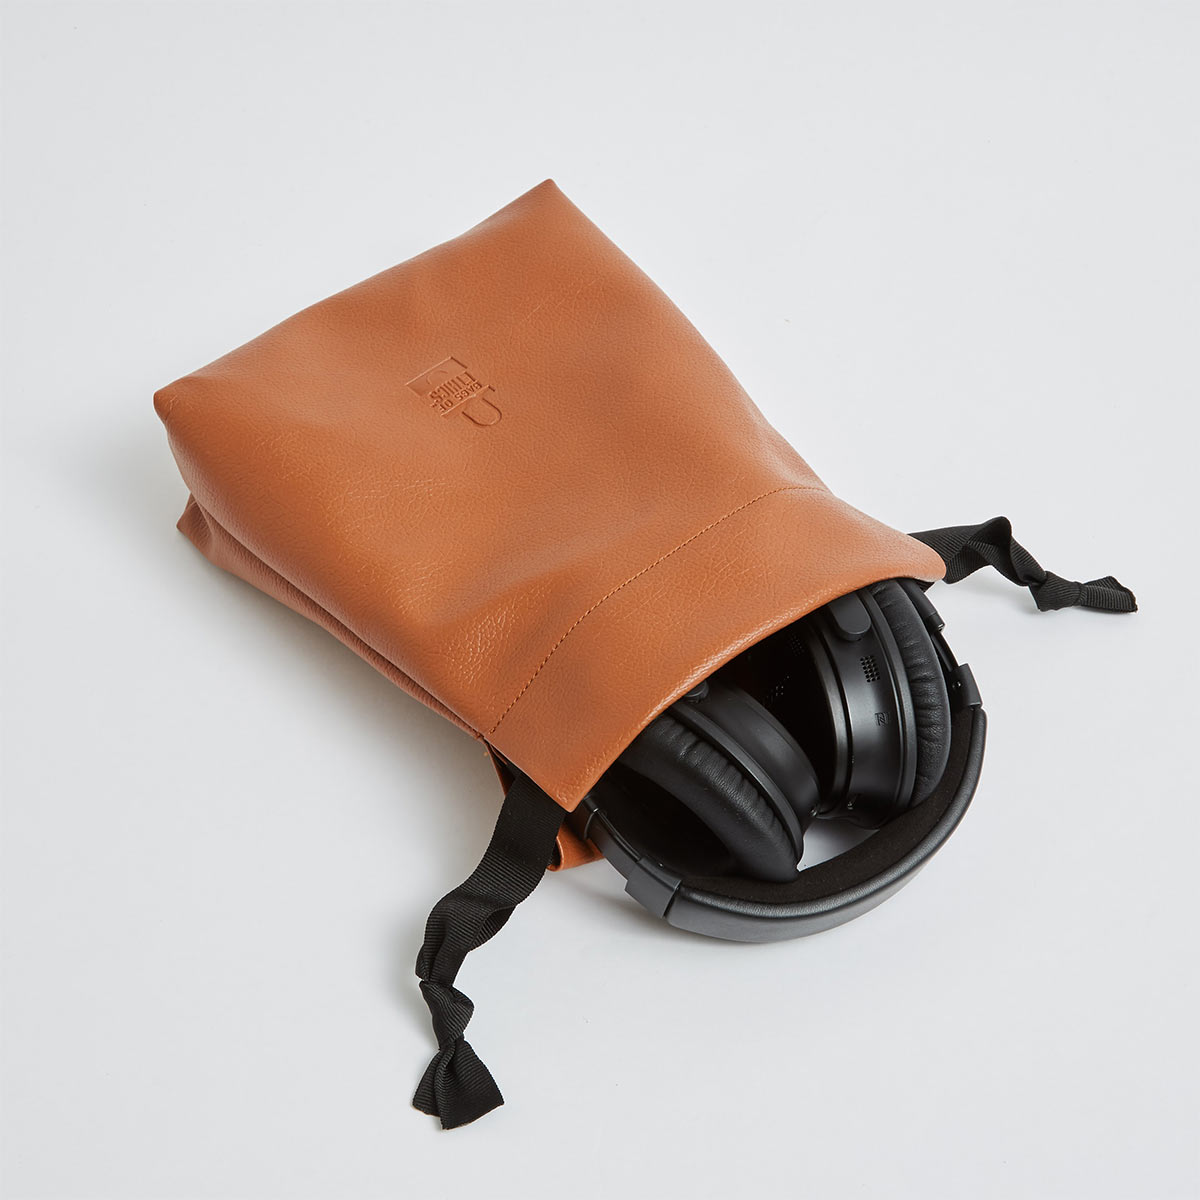 Vegan Leather Drawstring Bags, Manufacturer